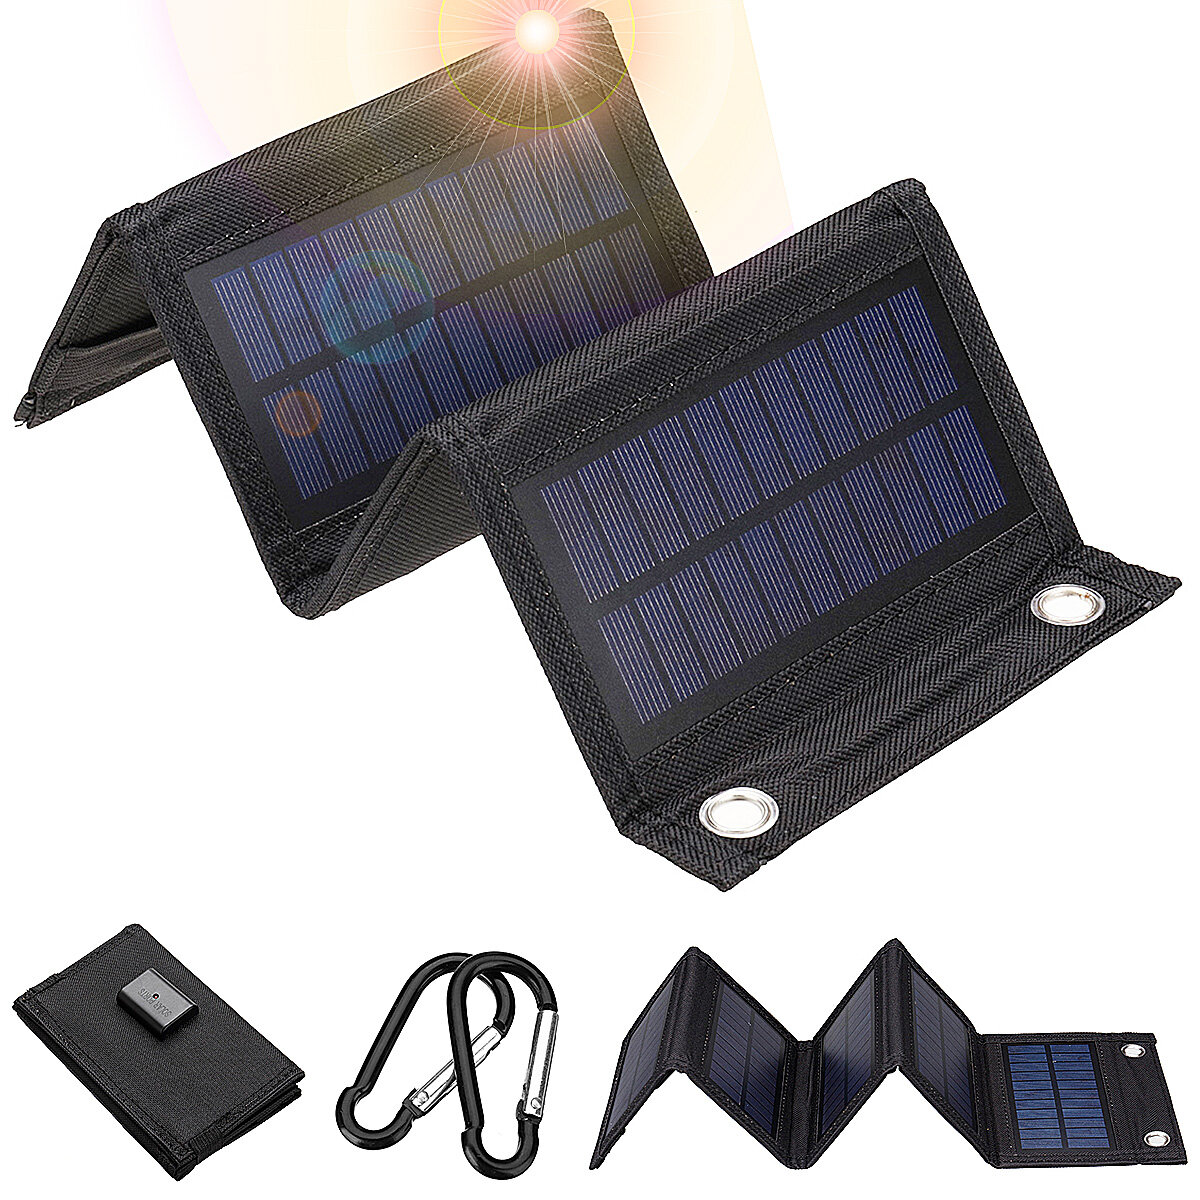 10w / 7.5w/6w折りたたみ式ソーラーパネル太陽電池充電器5V屋外でのスマートフォンキャンプ用のUSBProtableソーラーモバイル電源